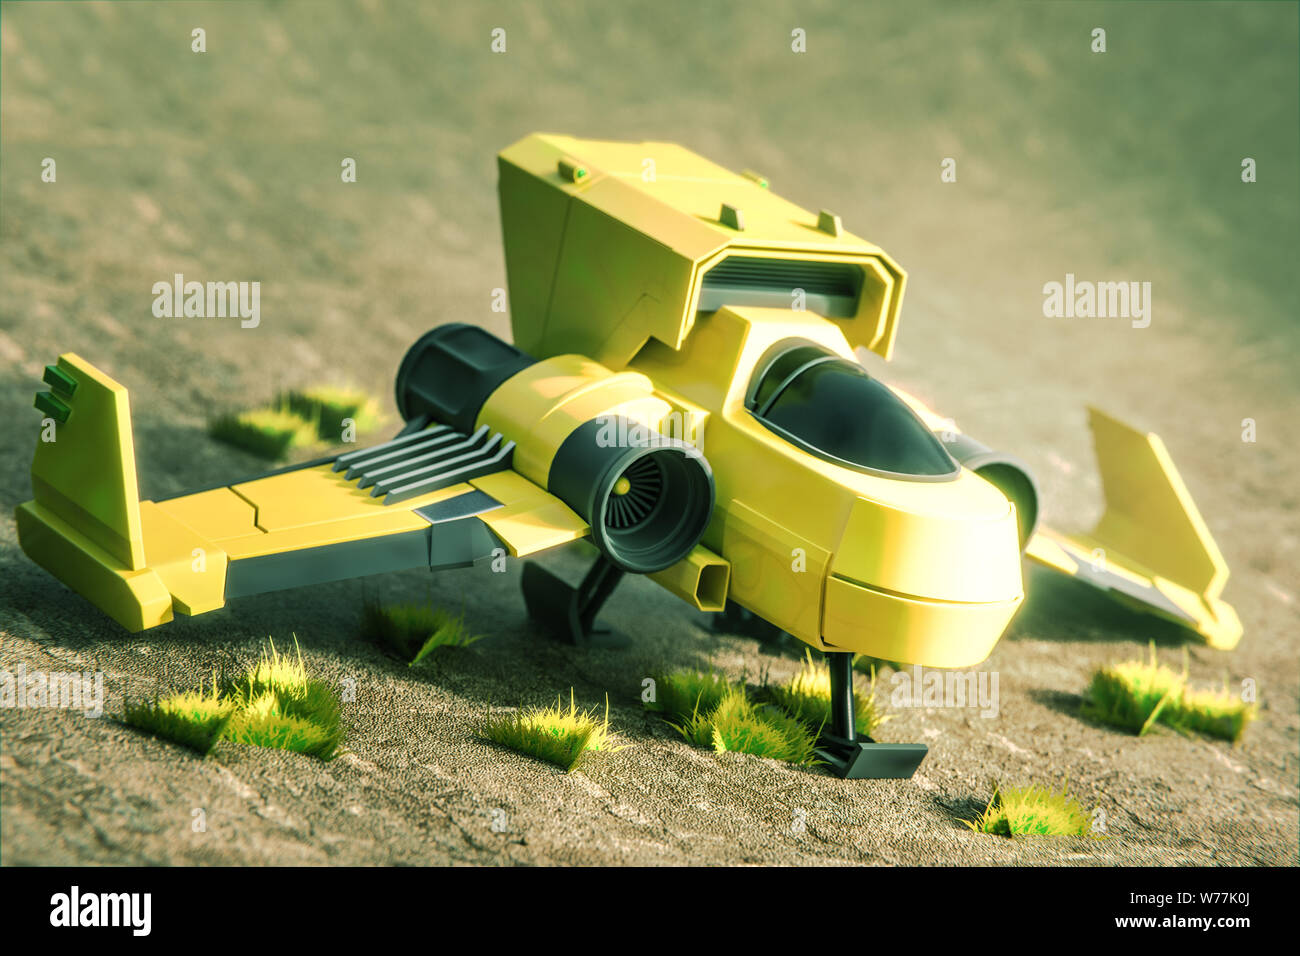 starship on mars terrain 3d illustration Stock Photo